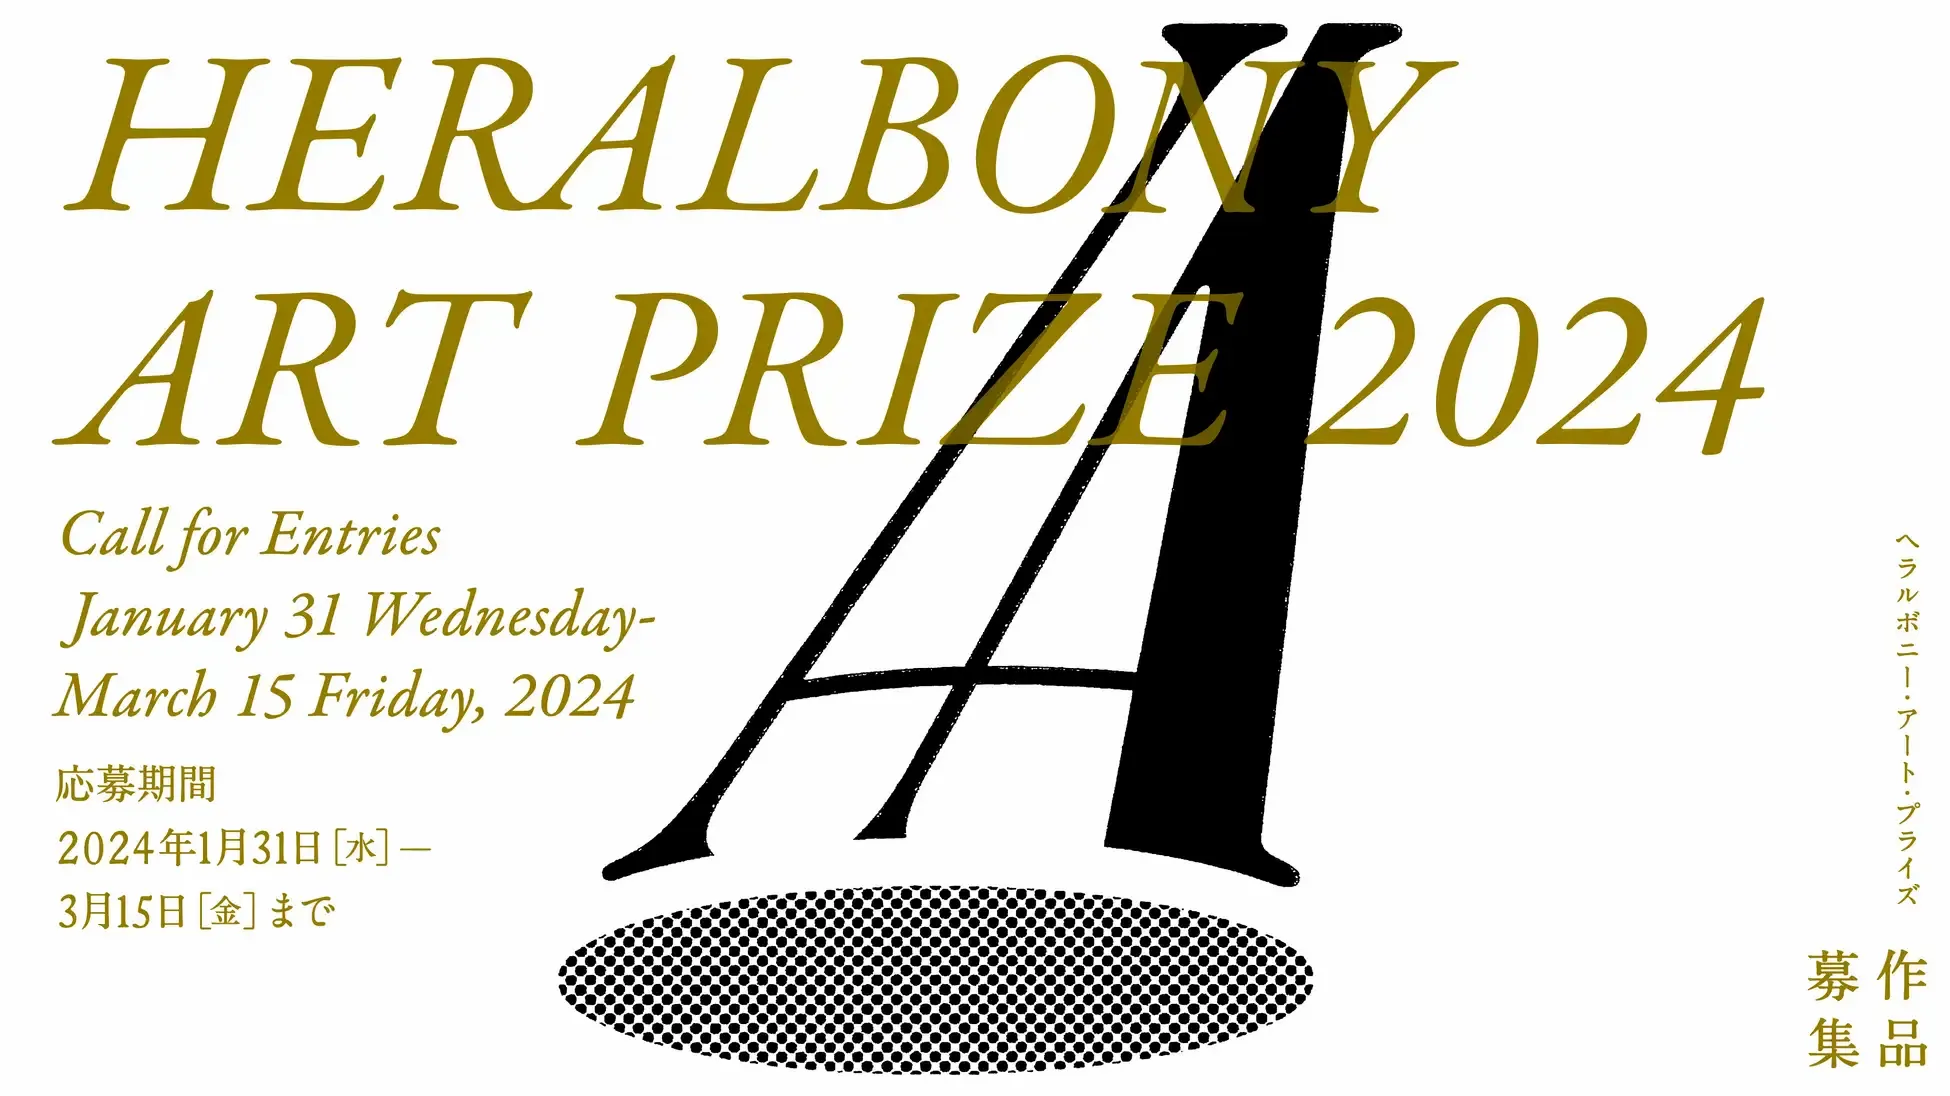 ヘラルボニー初の国際アートアワード「HERALBONY Art Prize 2024」を創設。異彩の日、1/31より作品の公募を開始 - massive